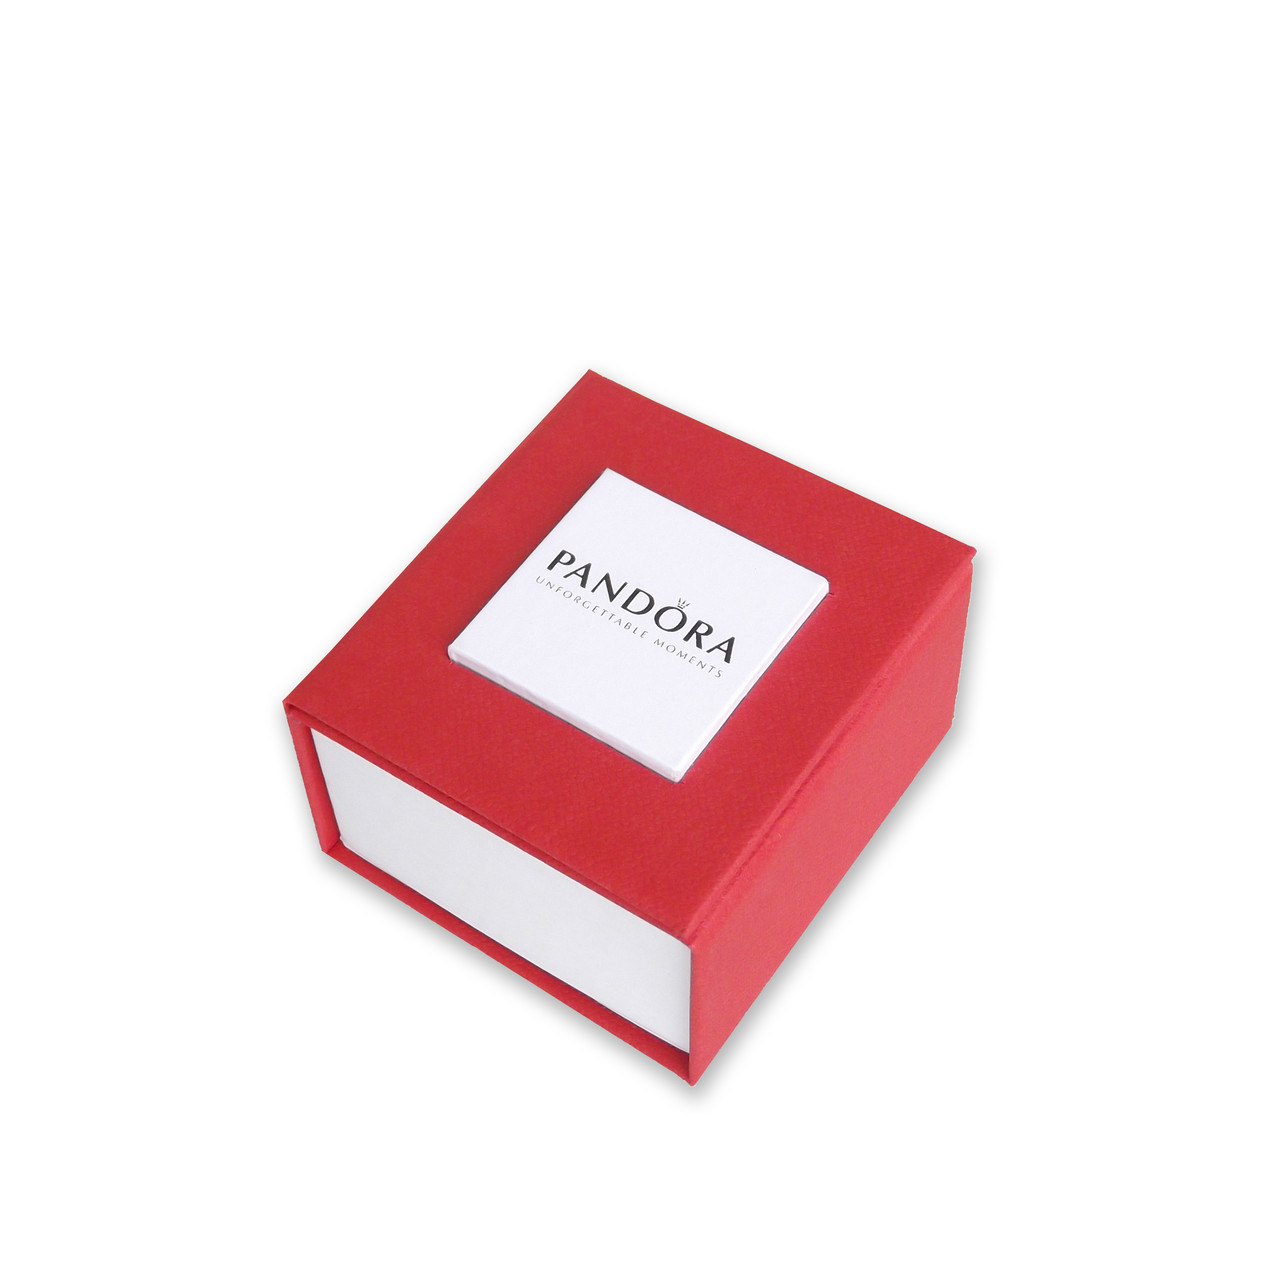 Червона коробка для шарму Pandora. Подарункова коробочка для шармів Pandora оптом.